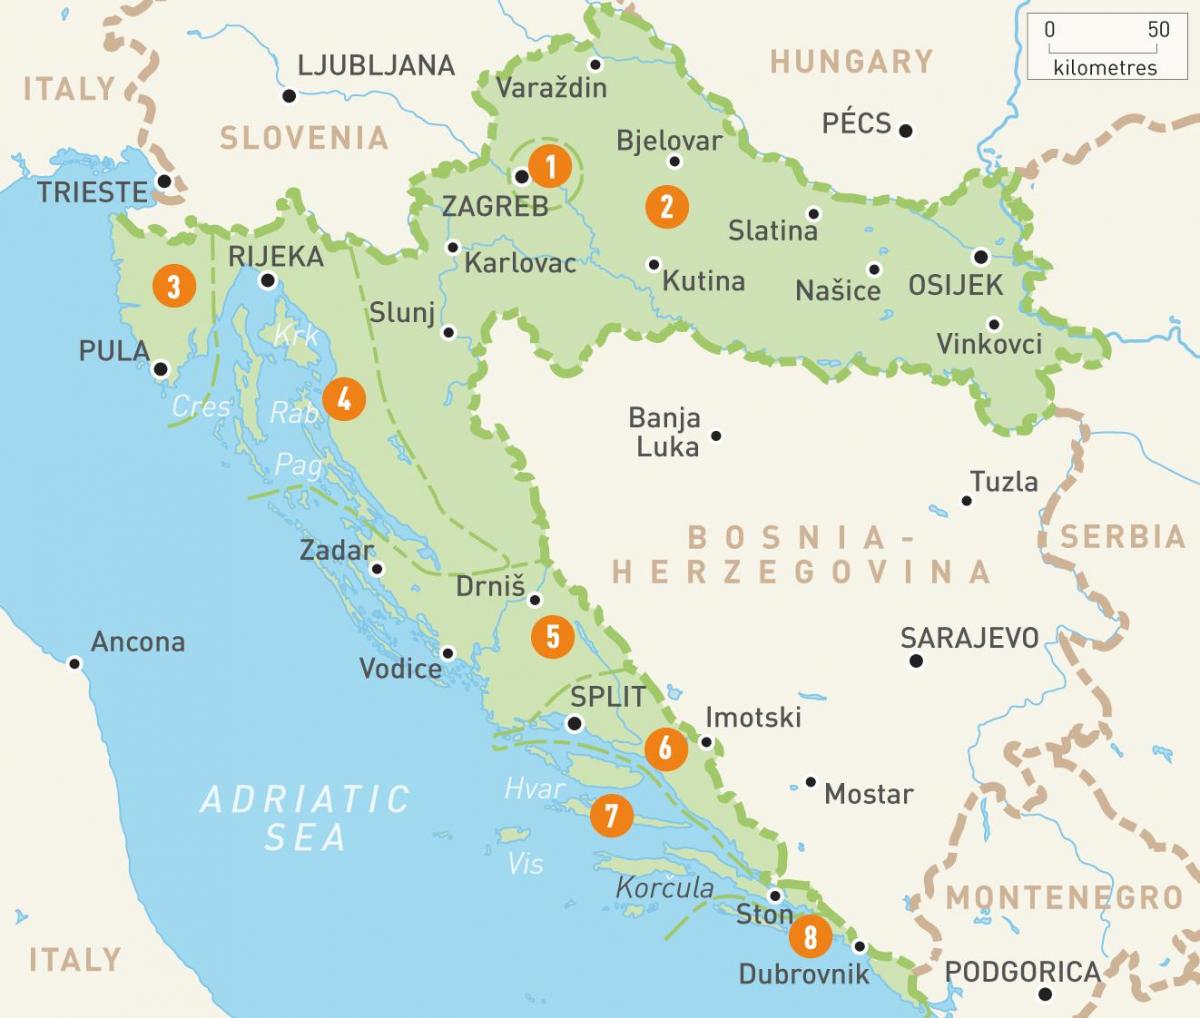 Karte von Kroatien und die Inseln